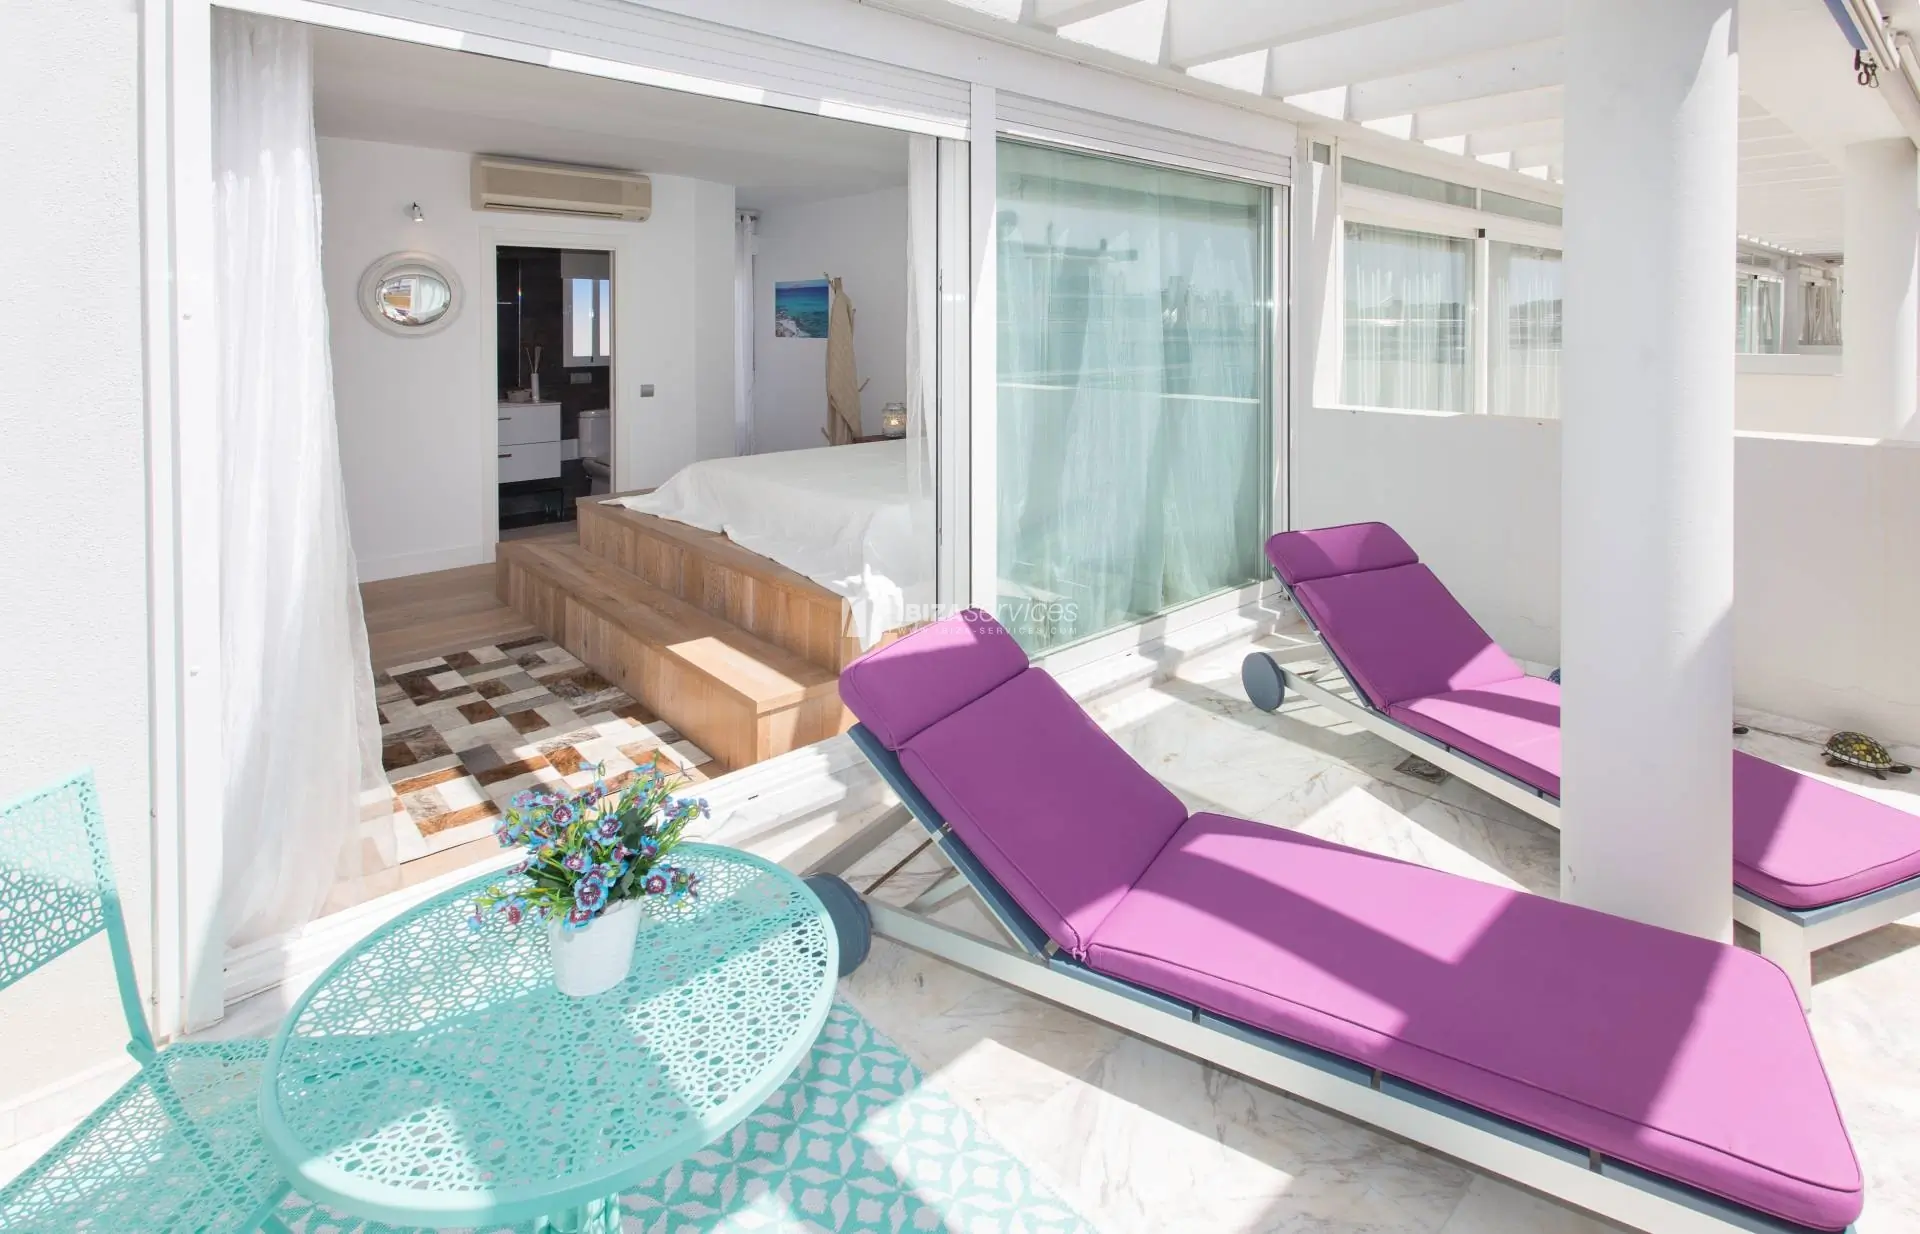 Espacioso ÁTICO-TRIPLEX de lujo en Marina Botafoc, amplias terrazas y vistas al mar para comprar